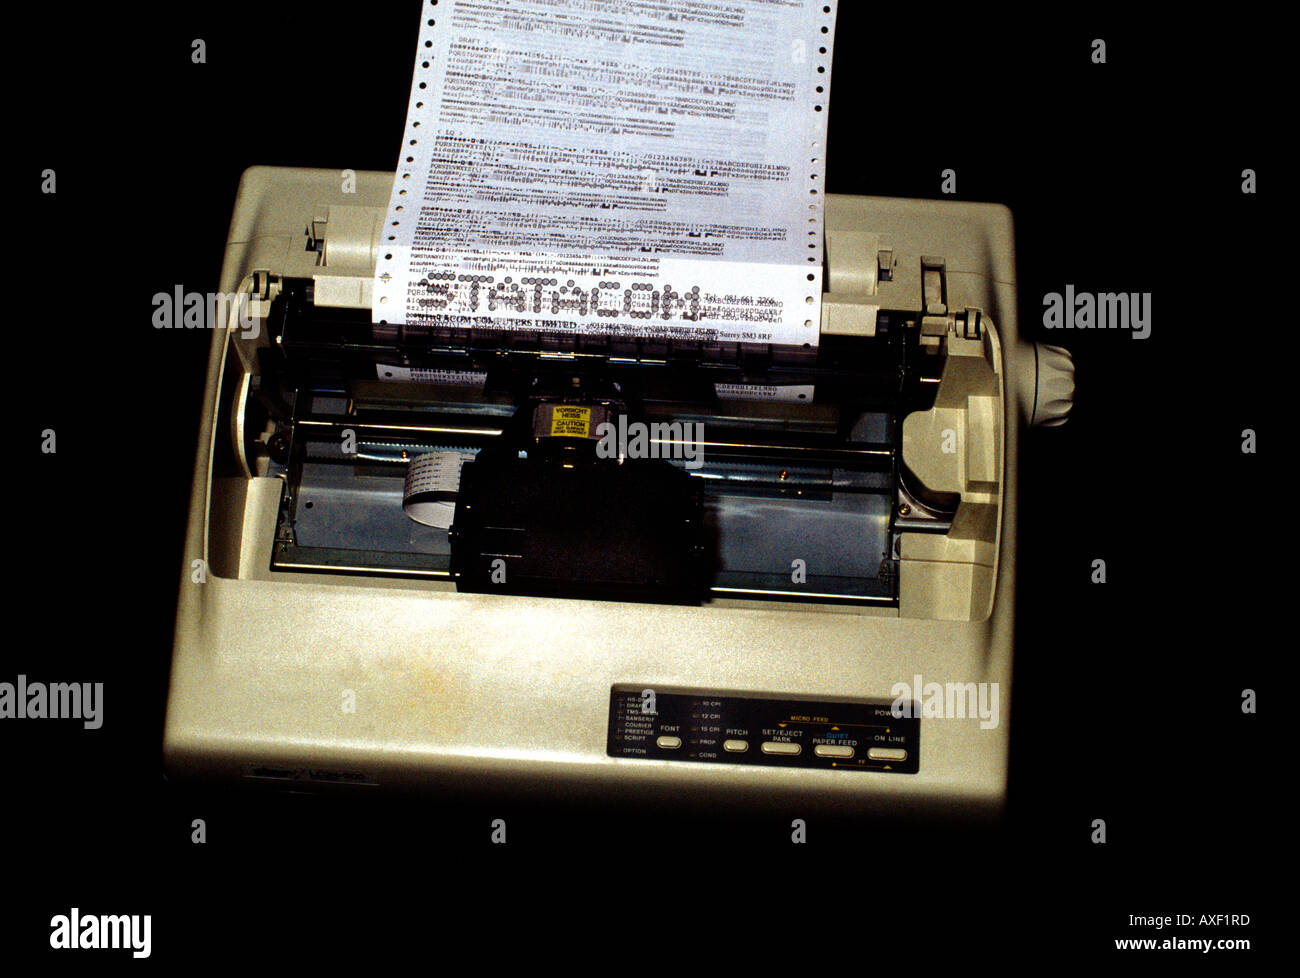 Dot matrix printer hi-res stock photography and images - Alamy